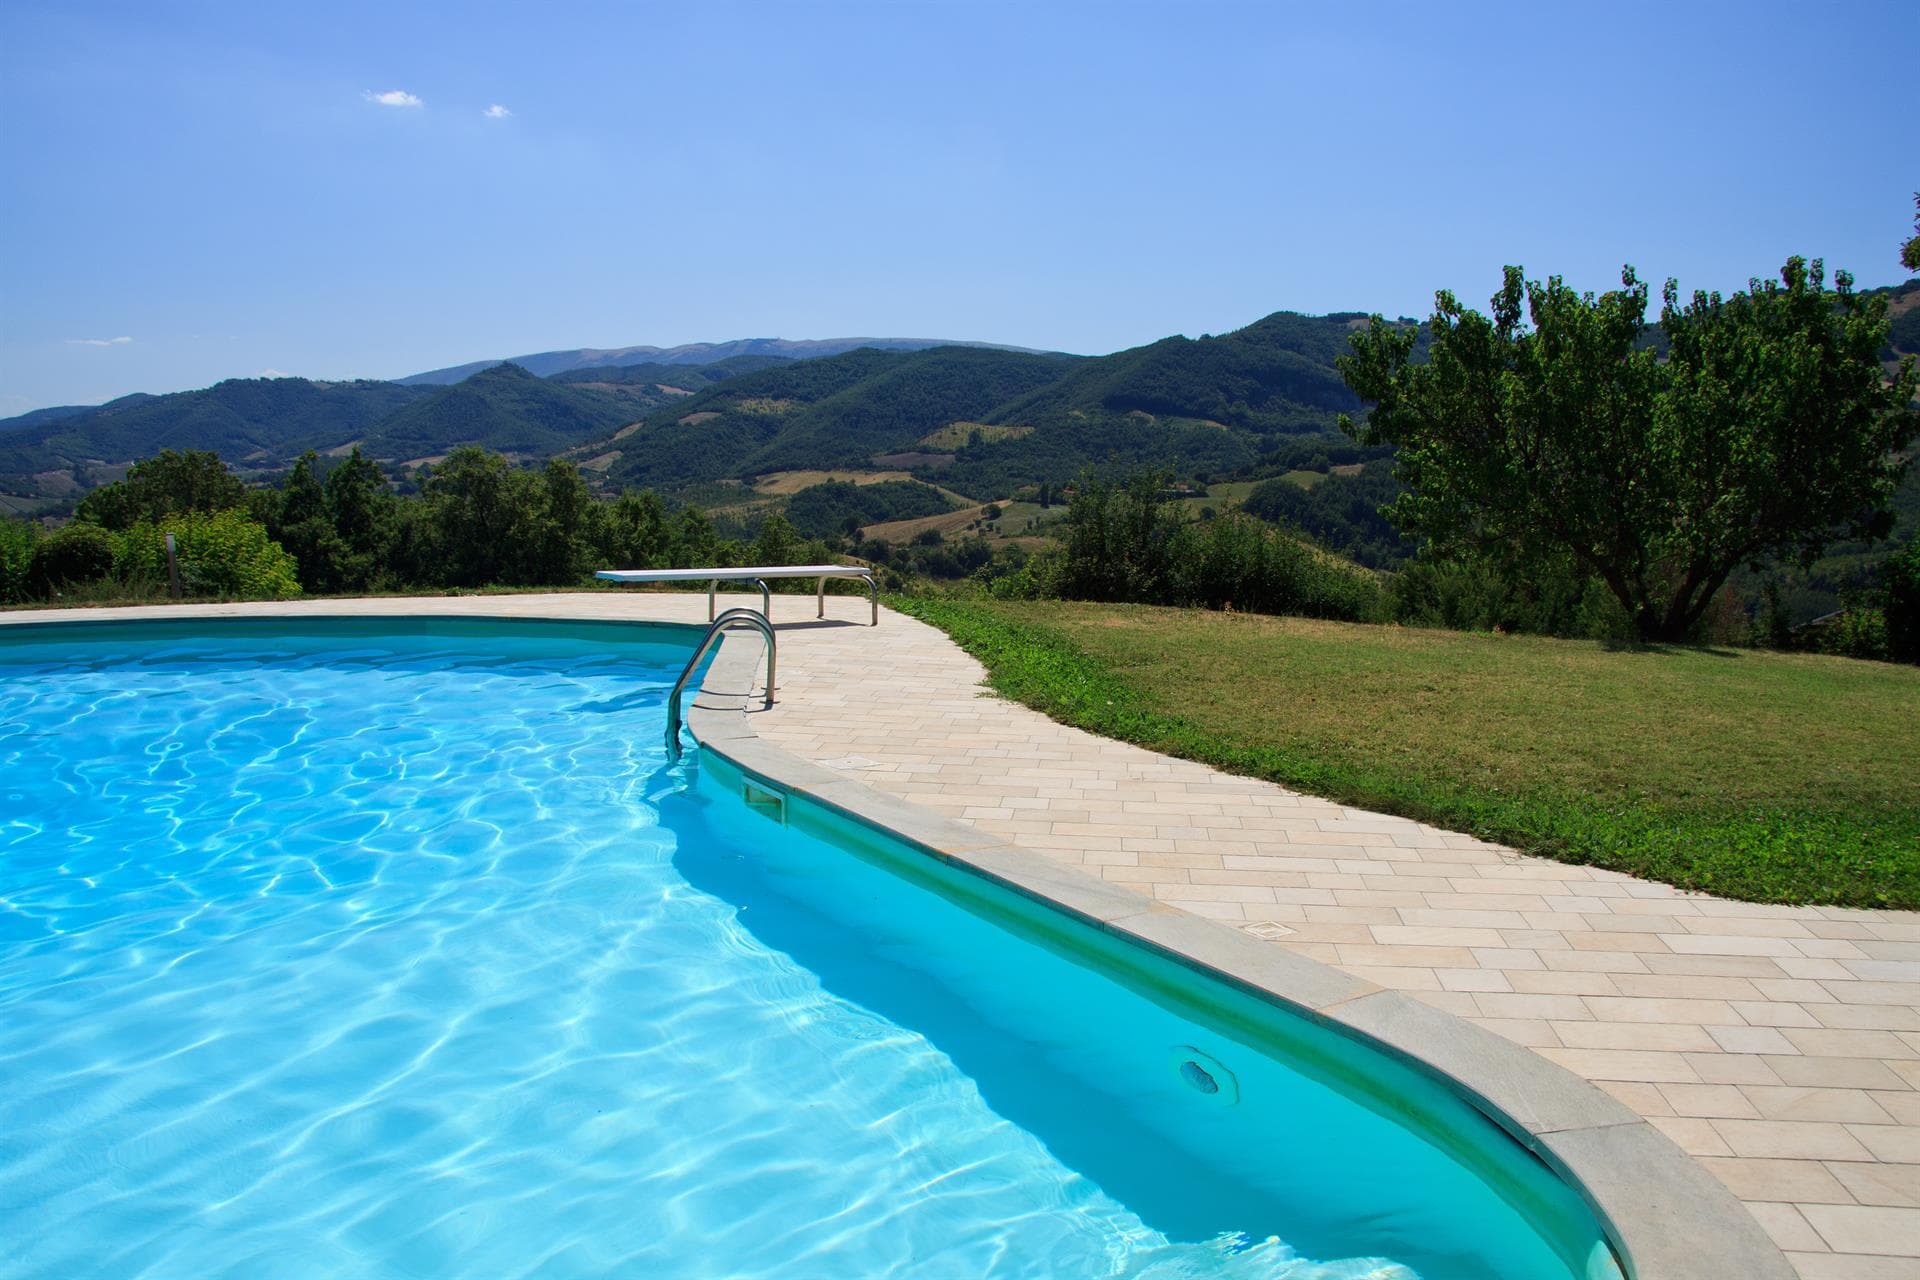 Mantenimiento y reparaciones de piscinas en Vigo